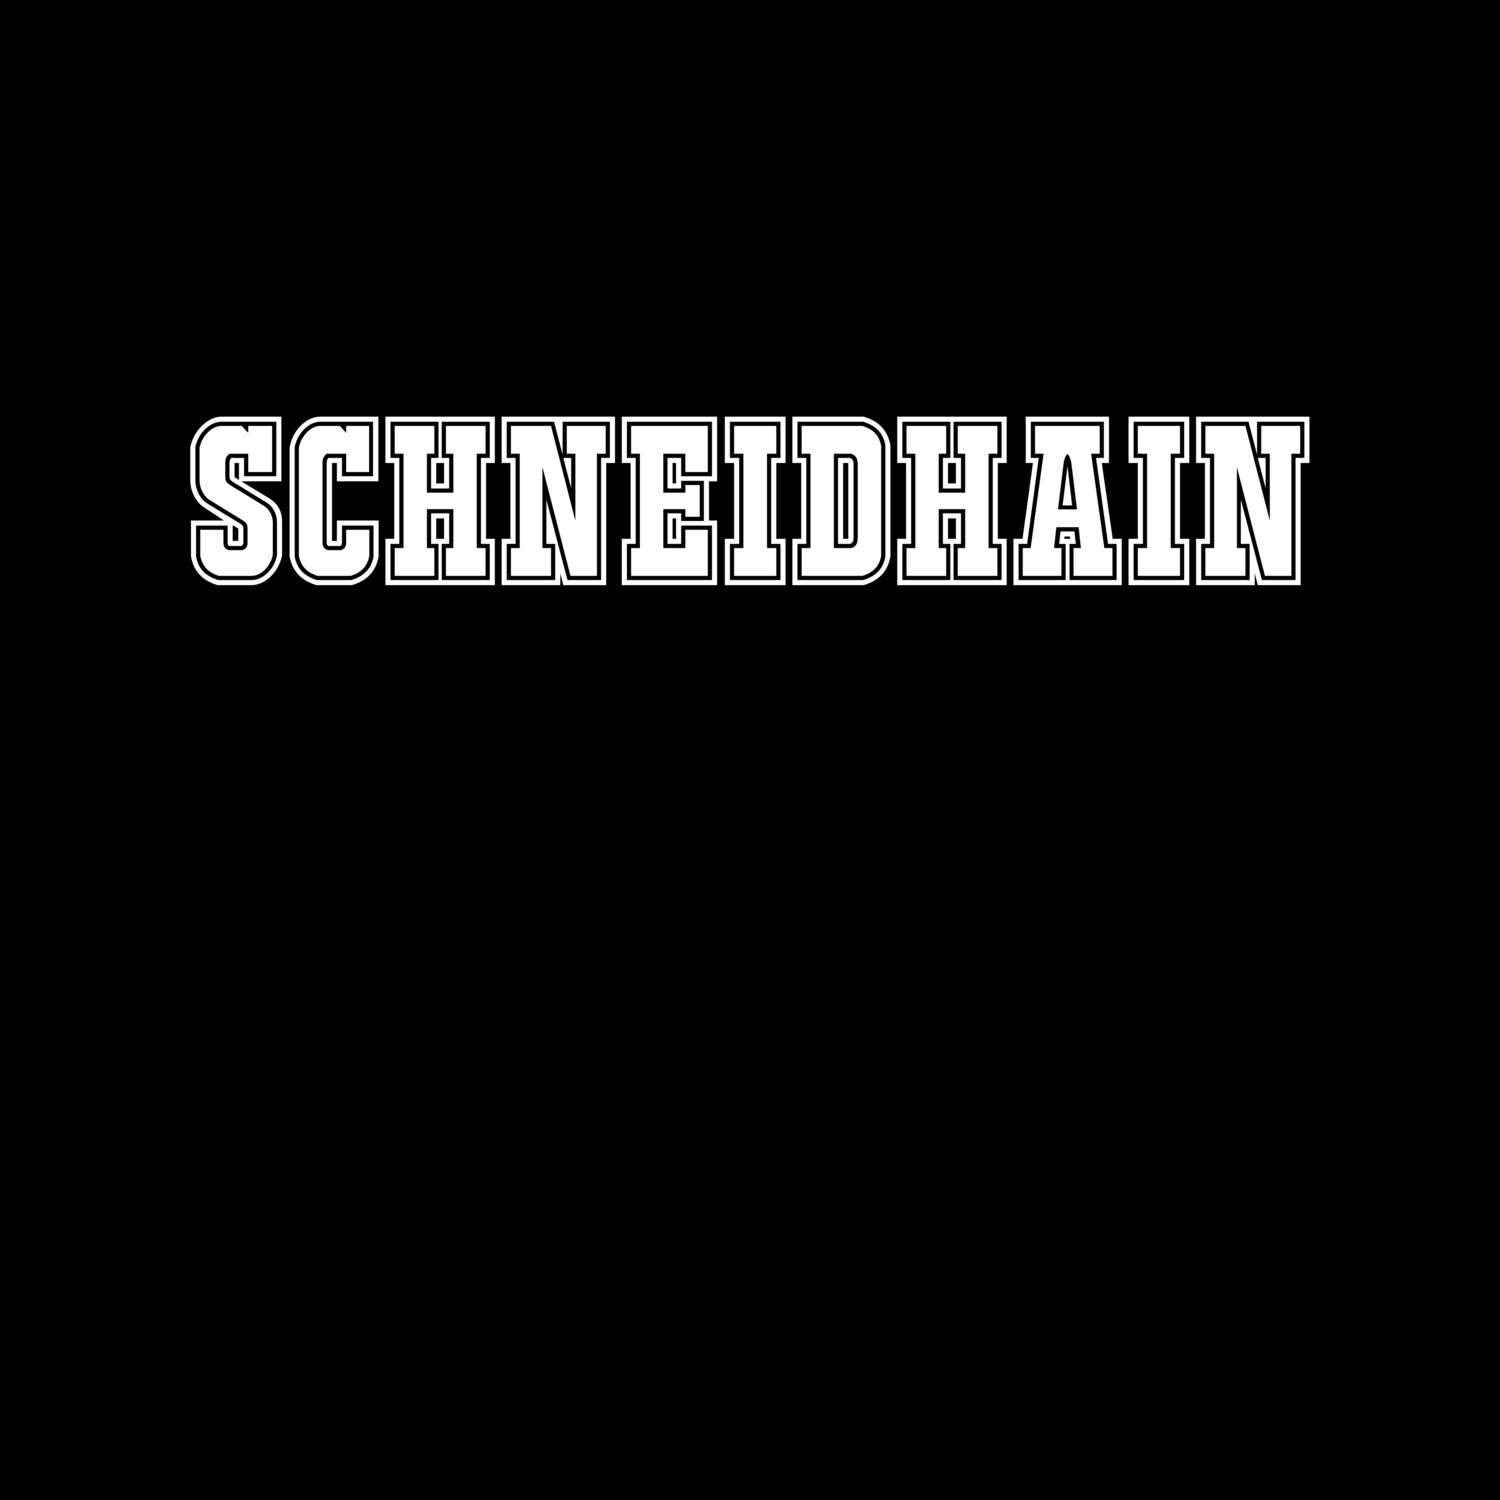 Schneidhain T-Shirt »Classic«